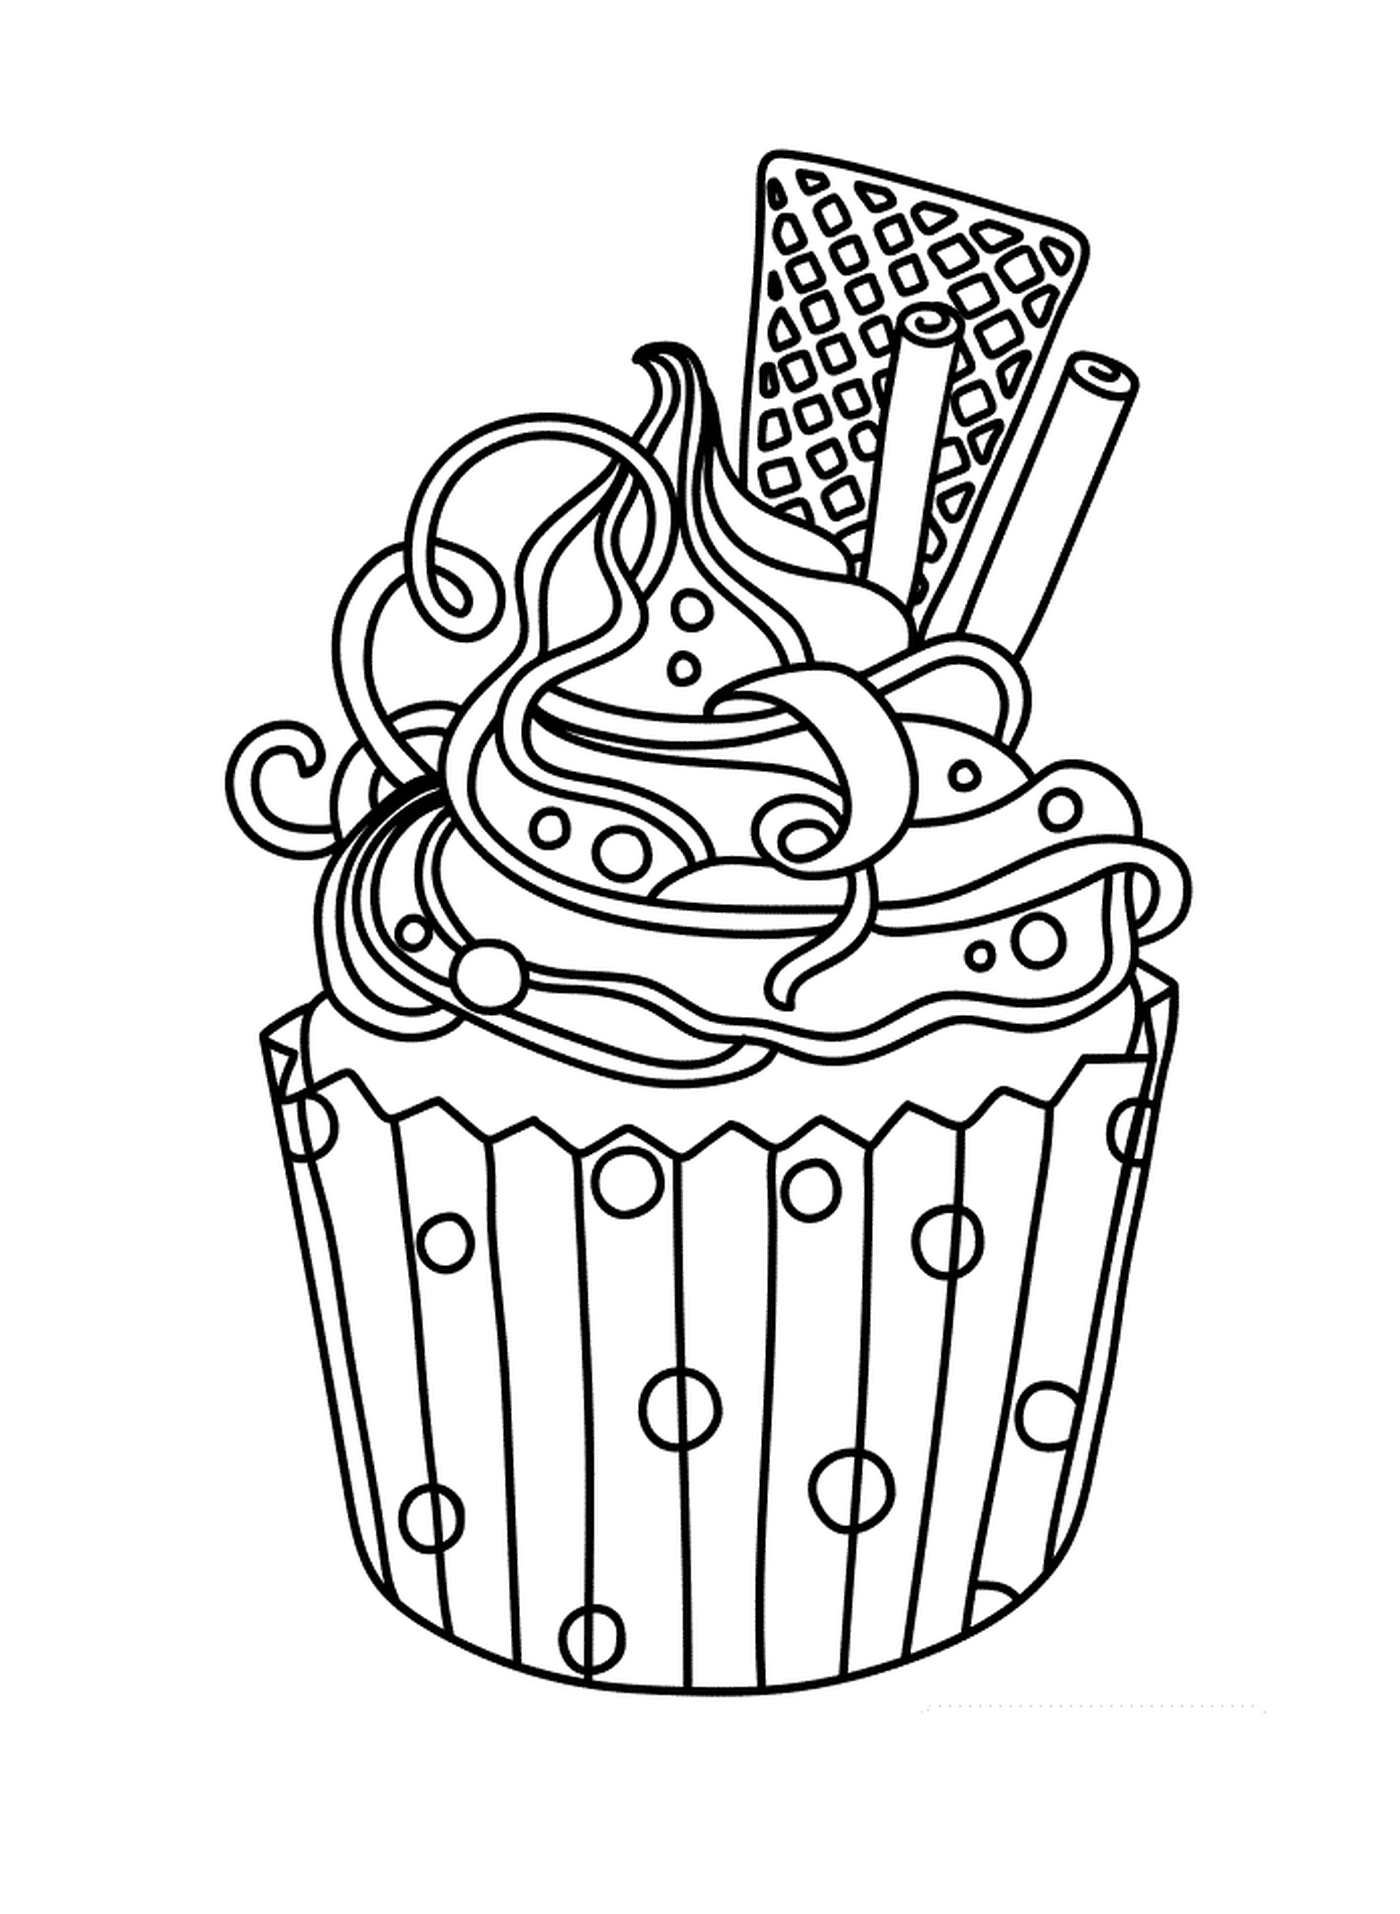  Um cupcake colorido 